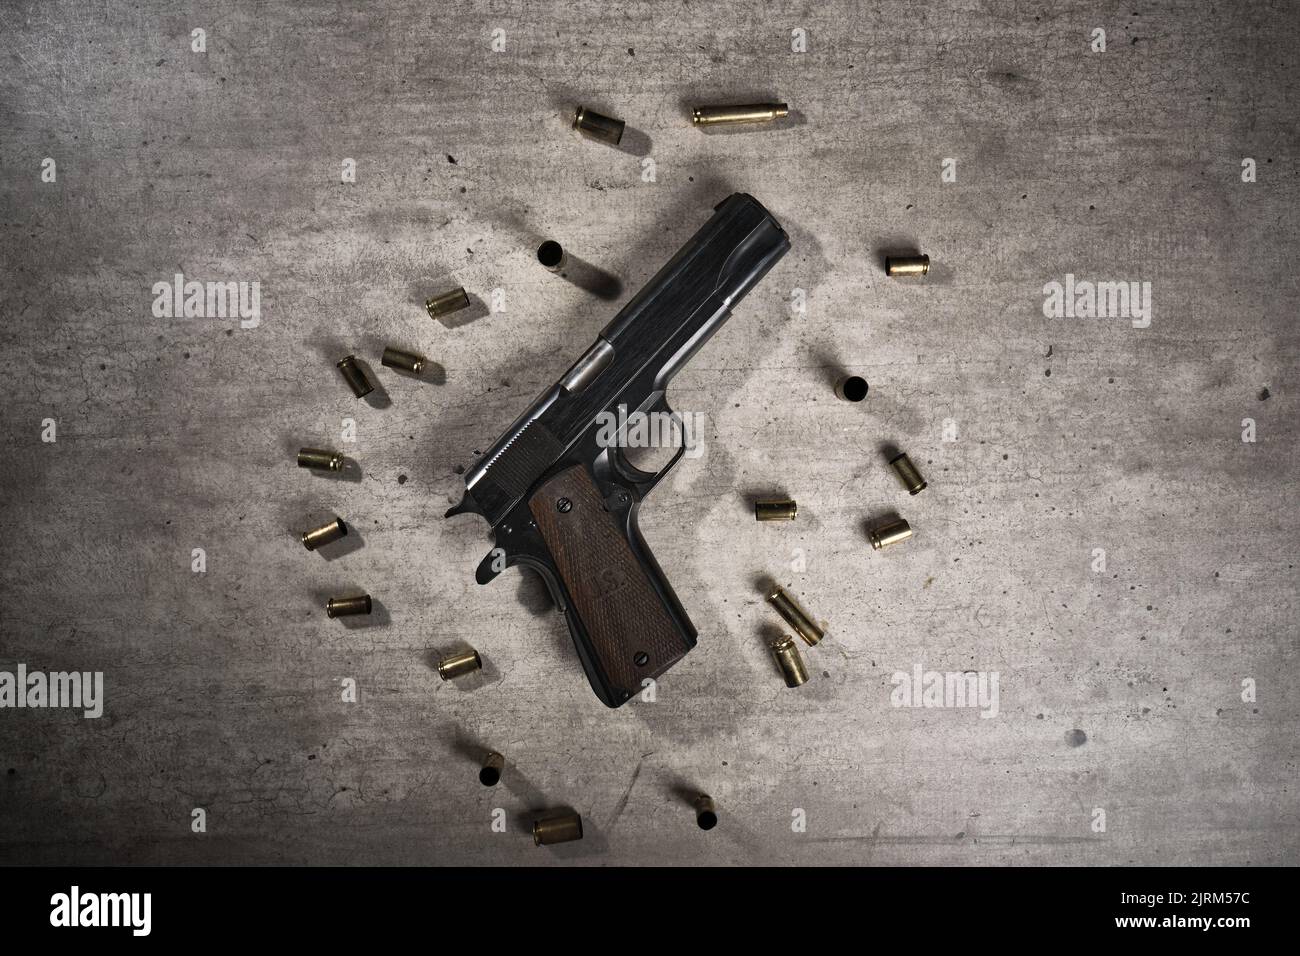 Un pistolet noir sur fond gris avec des cartouches usagées autour Banque D'Images